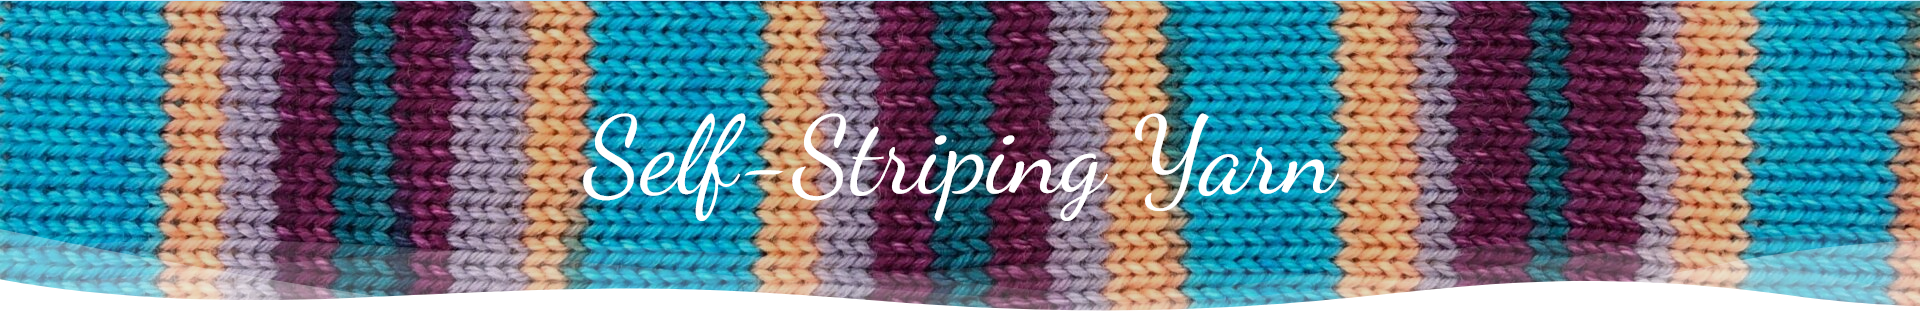 Self-striping yarn banner